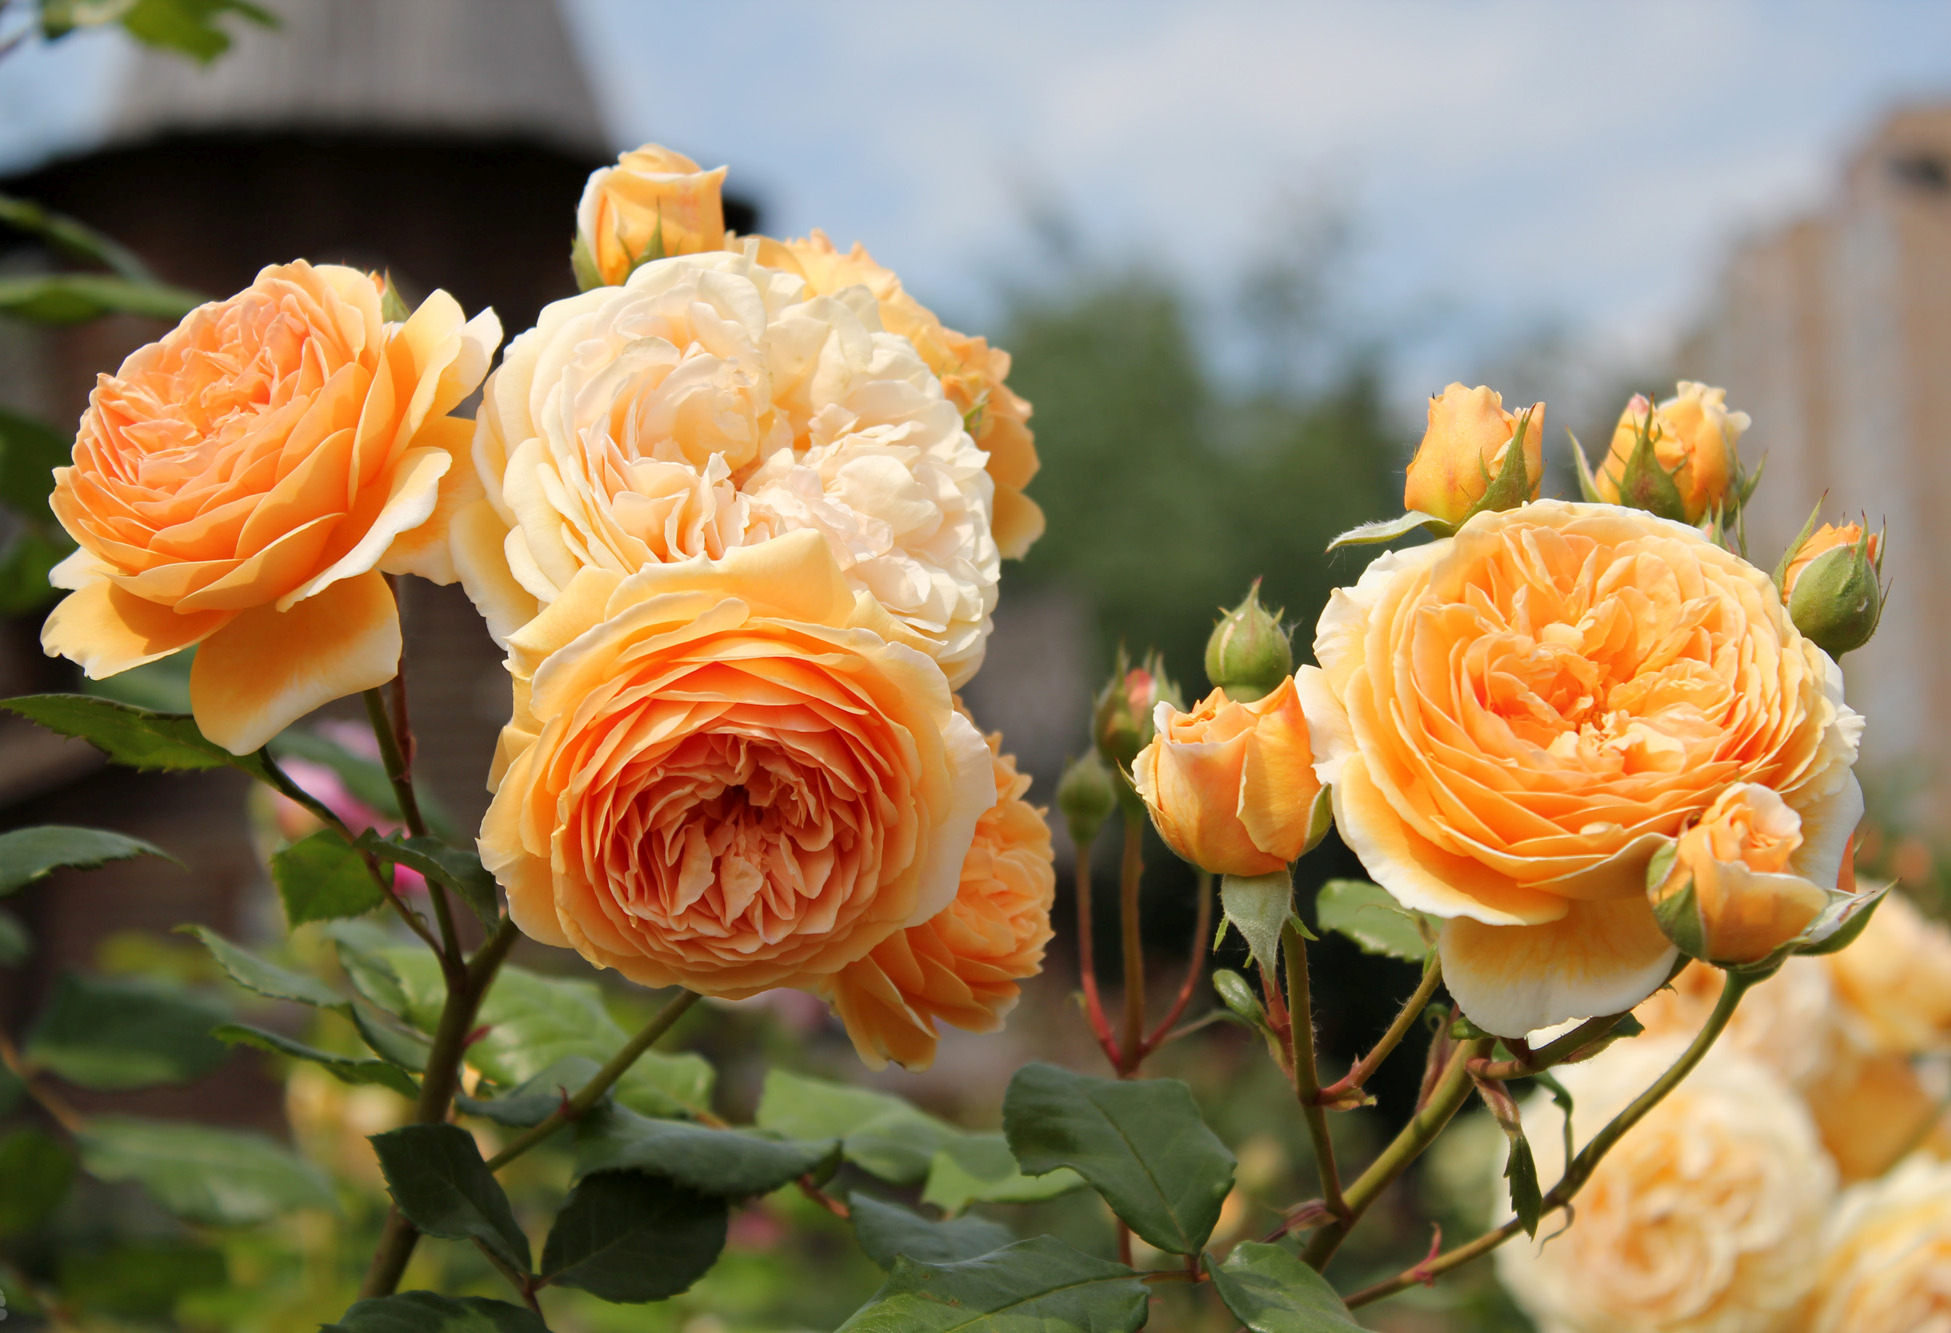 Informazioni sulle varietà di rose antiche e moderne, sulla loro descrizione e sui nomi